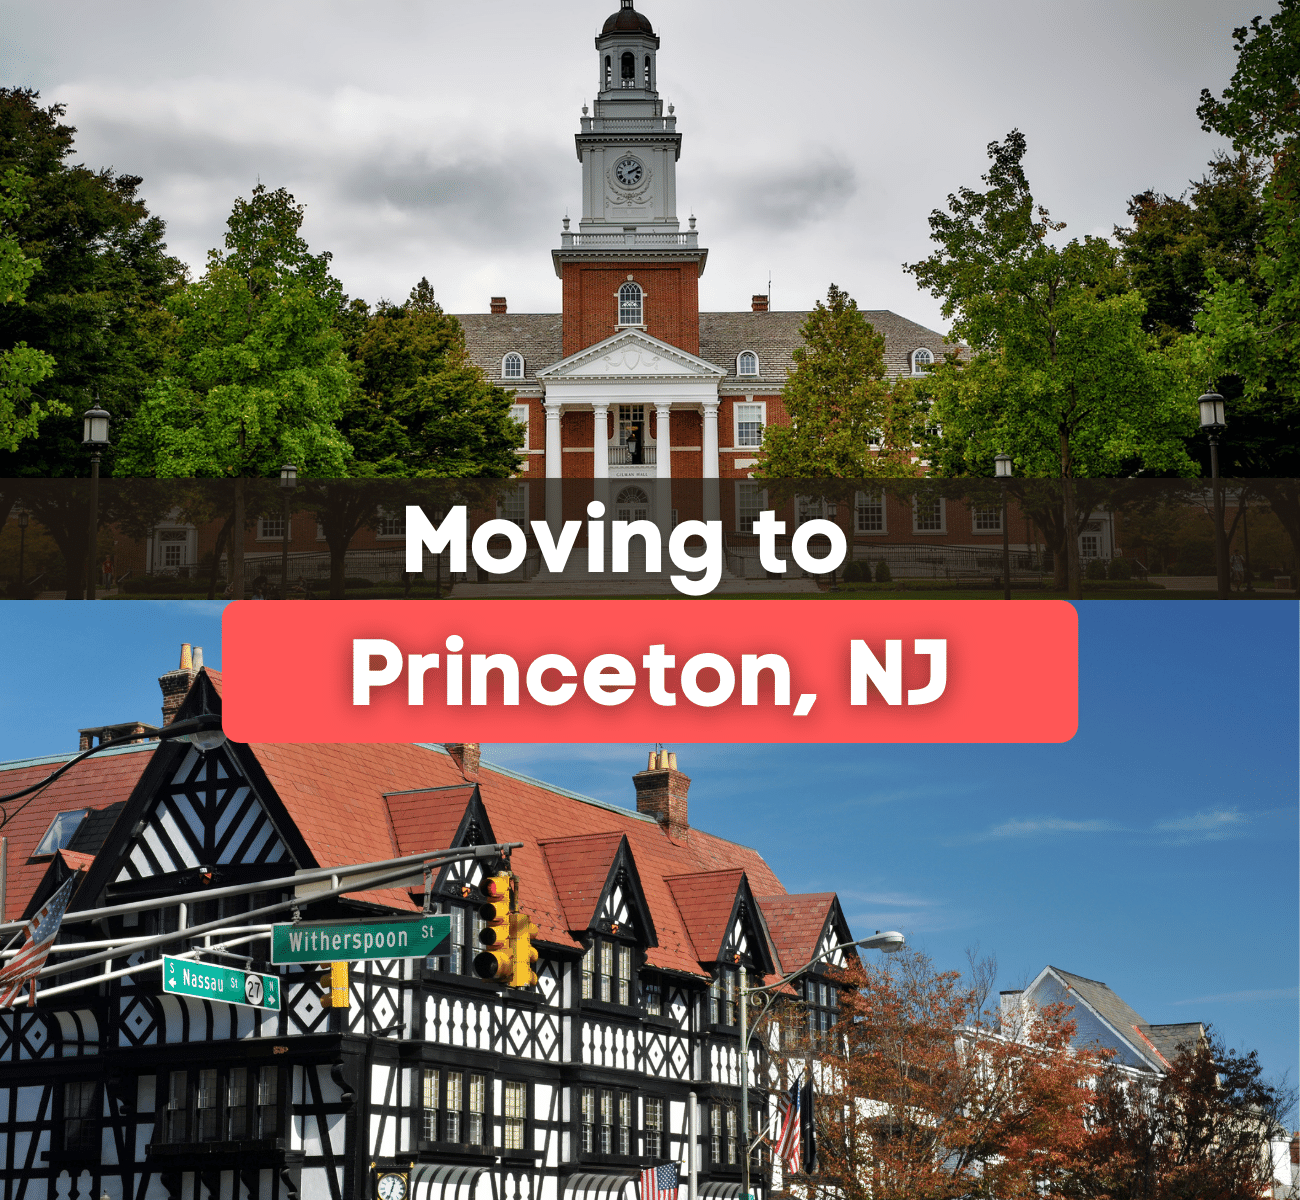 Moving to Princeton, NJ - Princeton University and city street